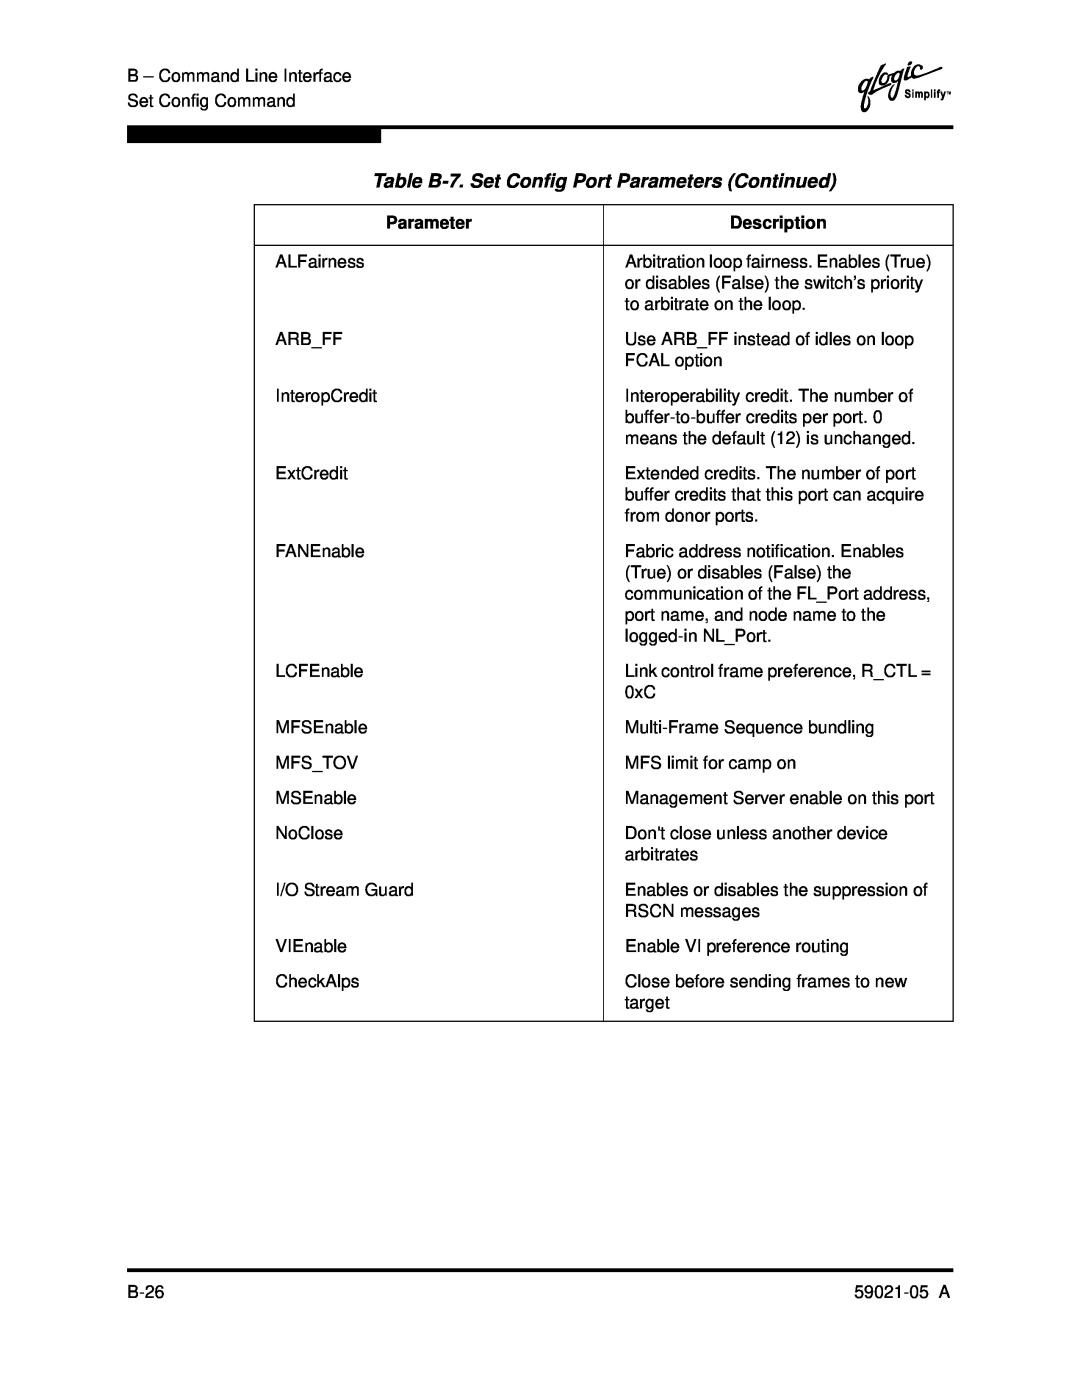 Q-Logic 59021-05 manual Table B-7. Set Config Port Parameters Continued, Description 